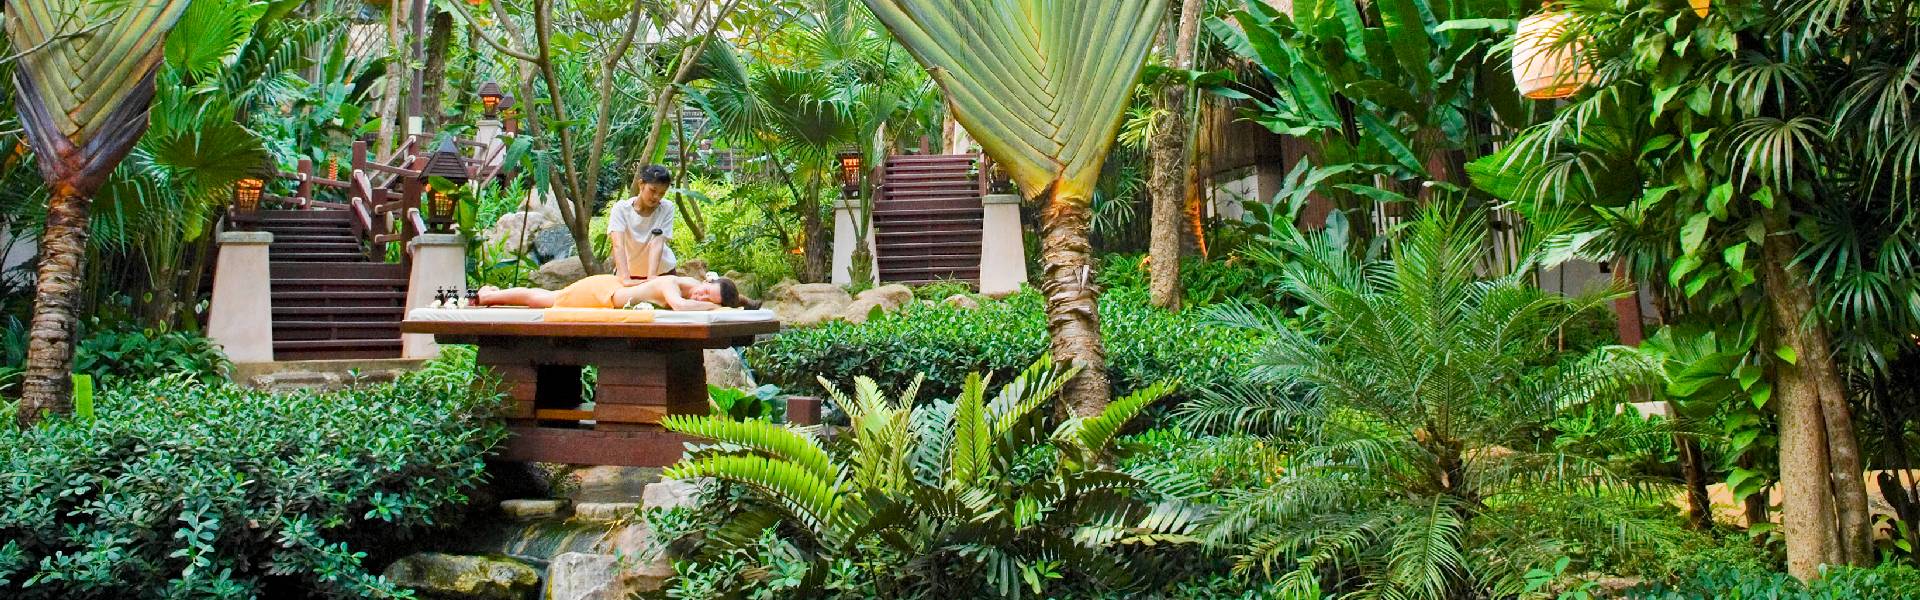 Pimalai Spa - outdoor massage in garden